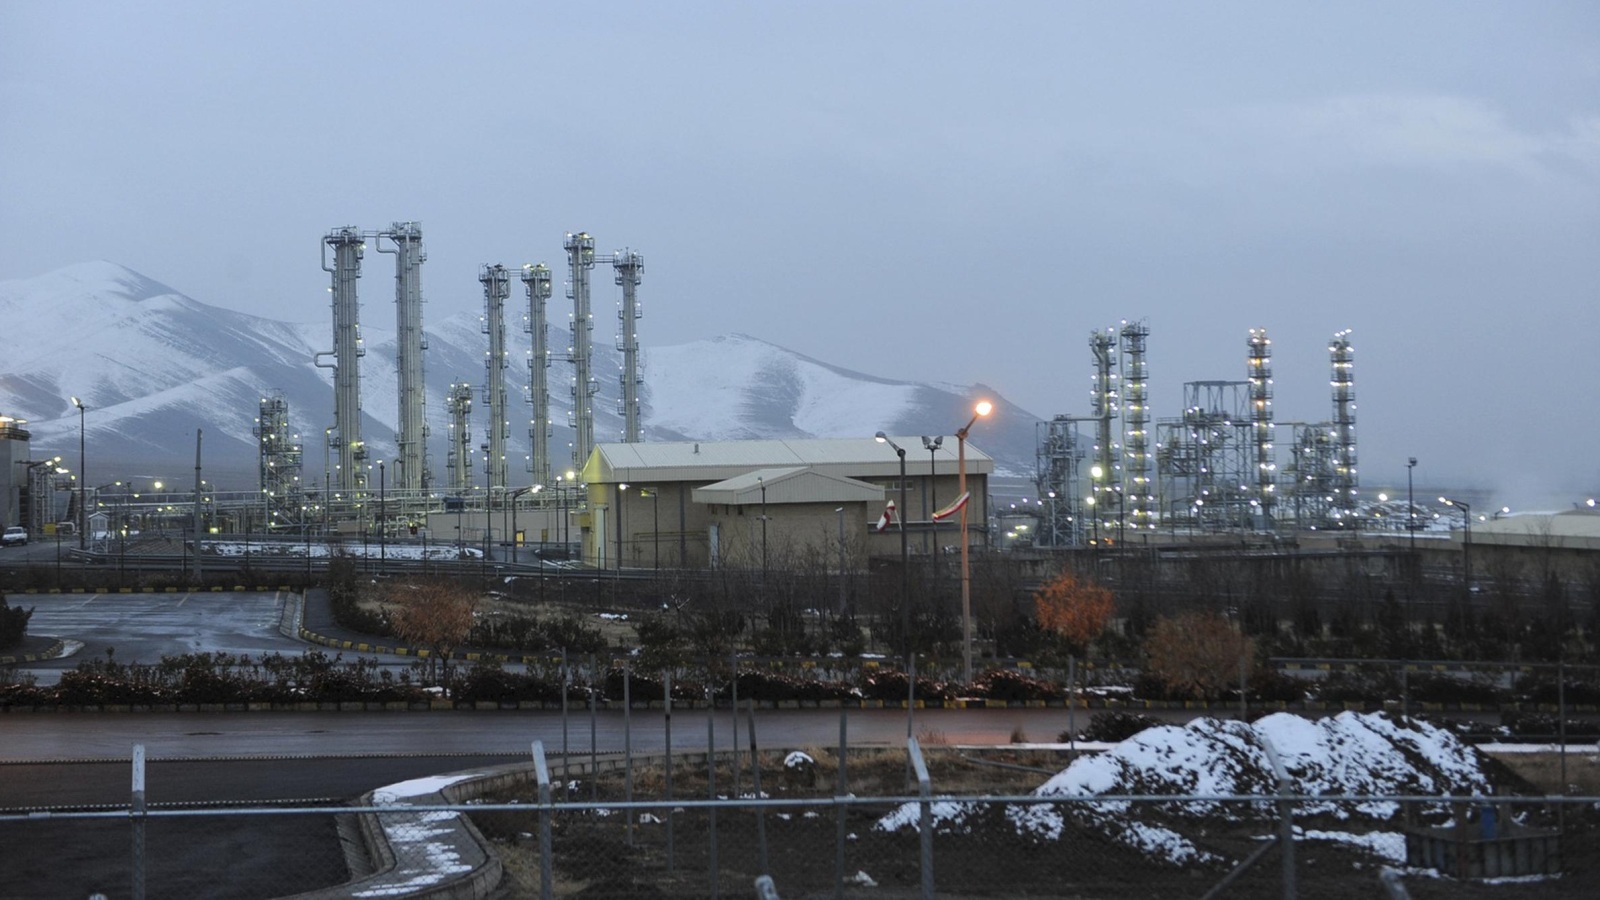 ‪مفاعل أراك من المنشآت المشمولة بتحييد الأنشطة النووية الإيرانية وفق اتفاق فيينا‬ (أسوشيتد برس-أرشيف)